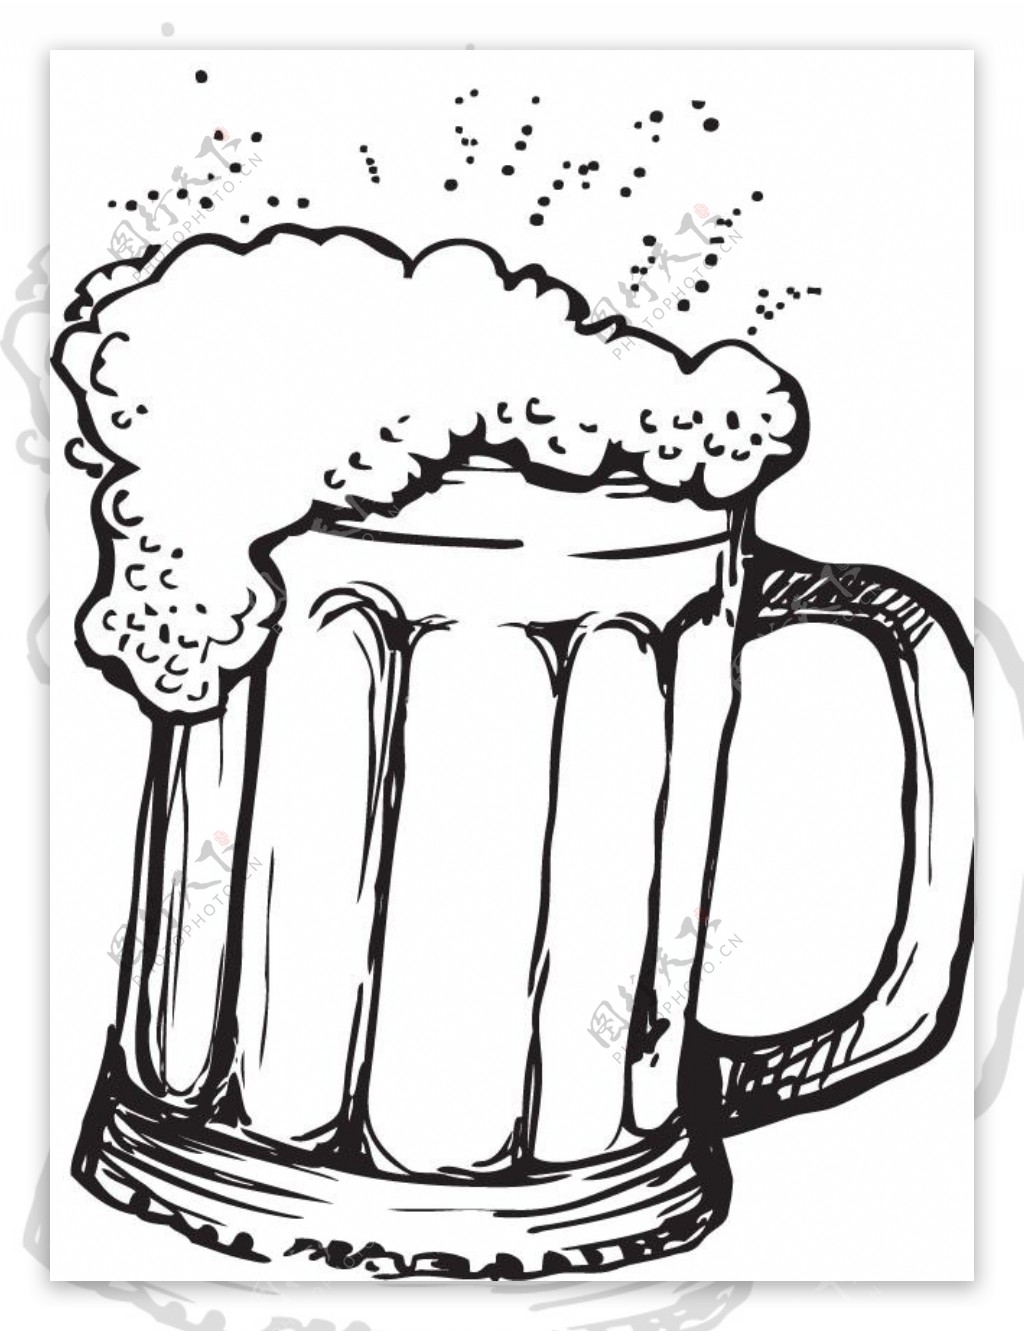 啤酒杯手绘元素图案